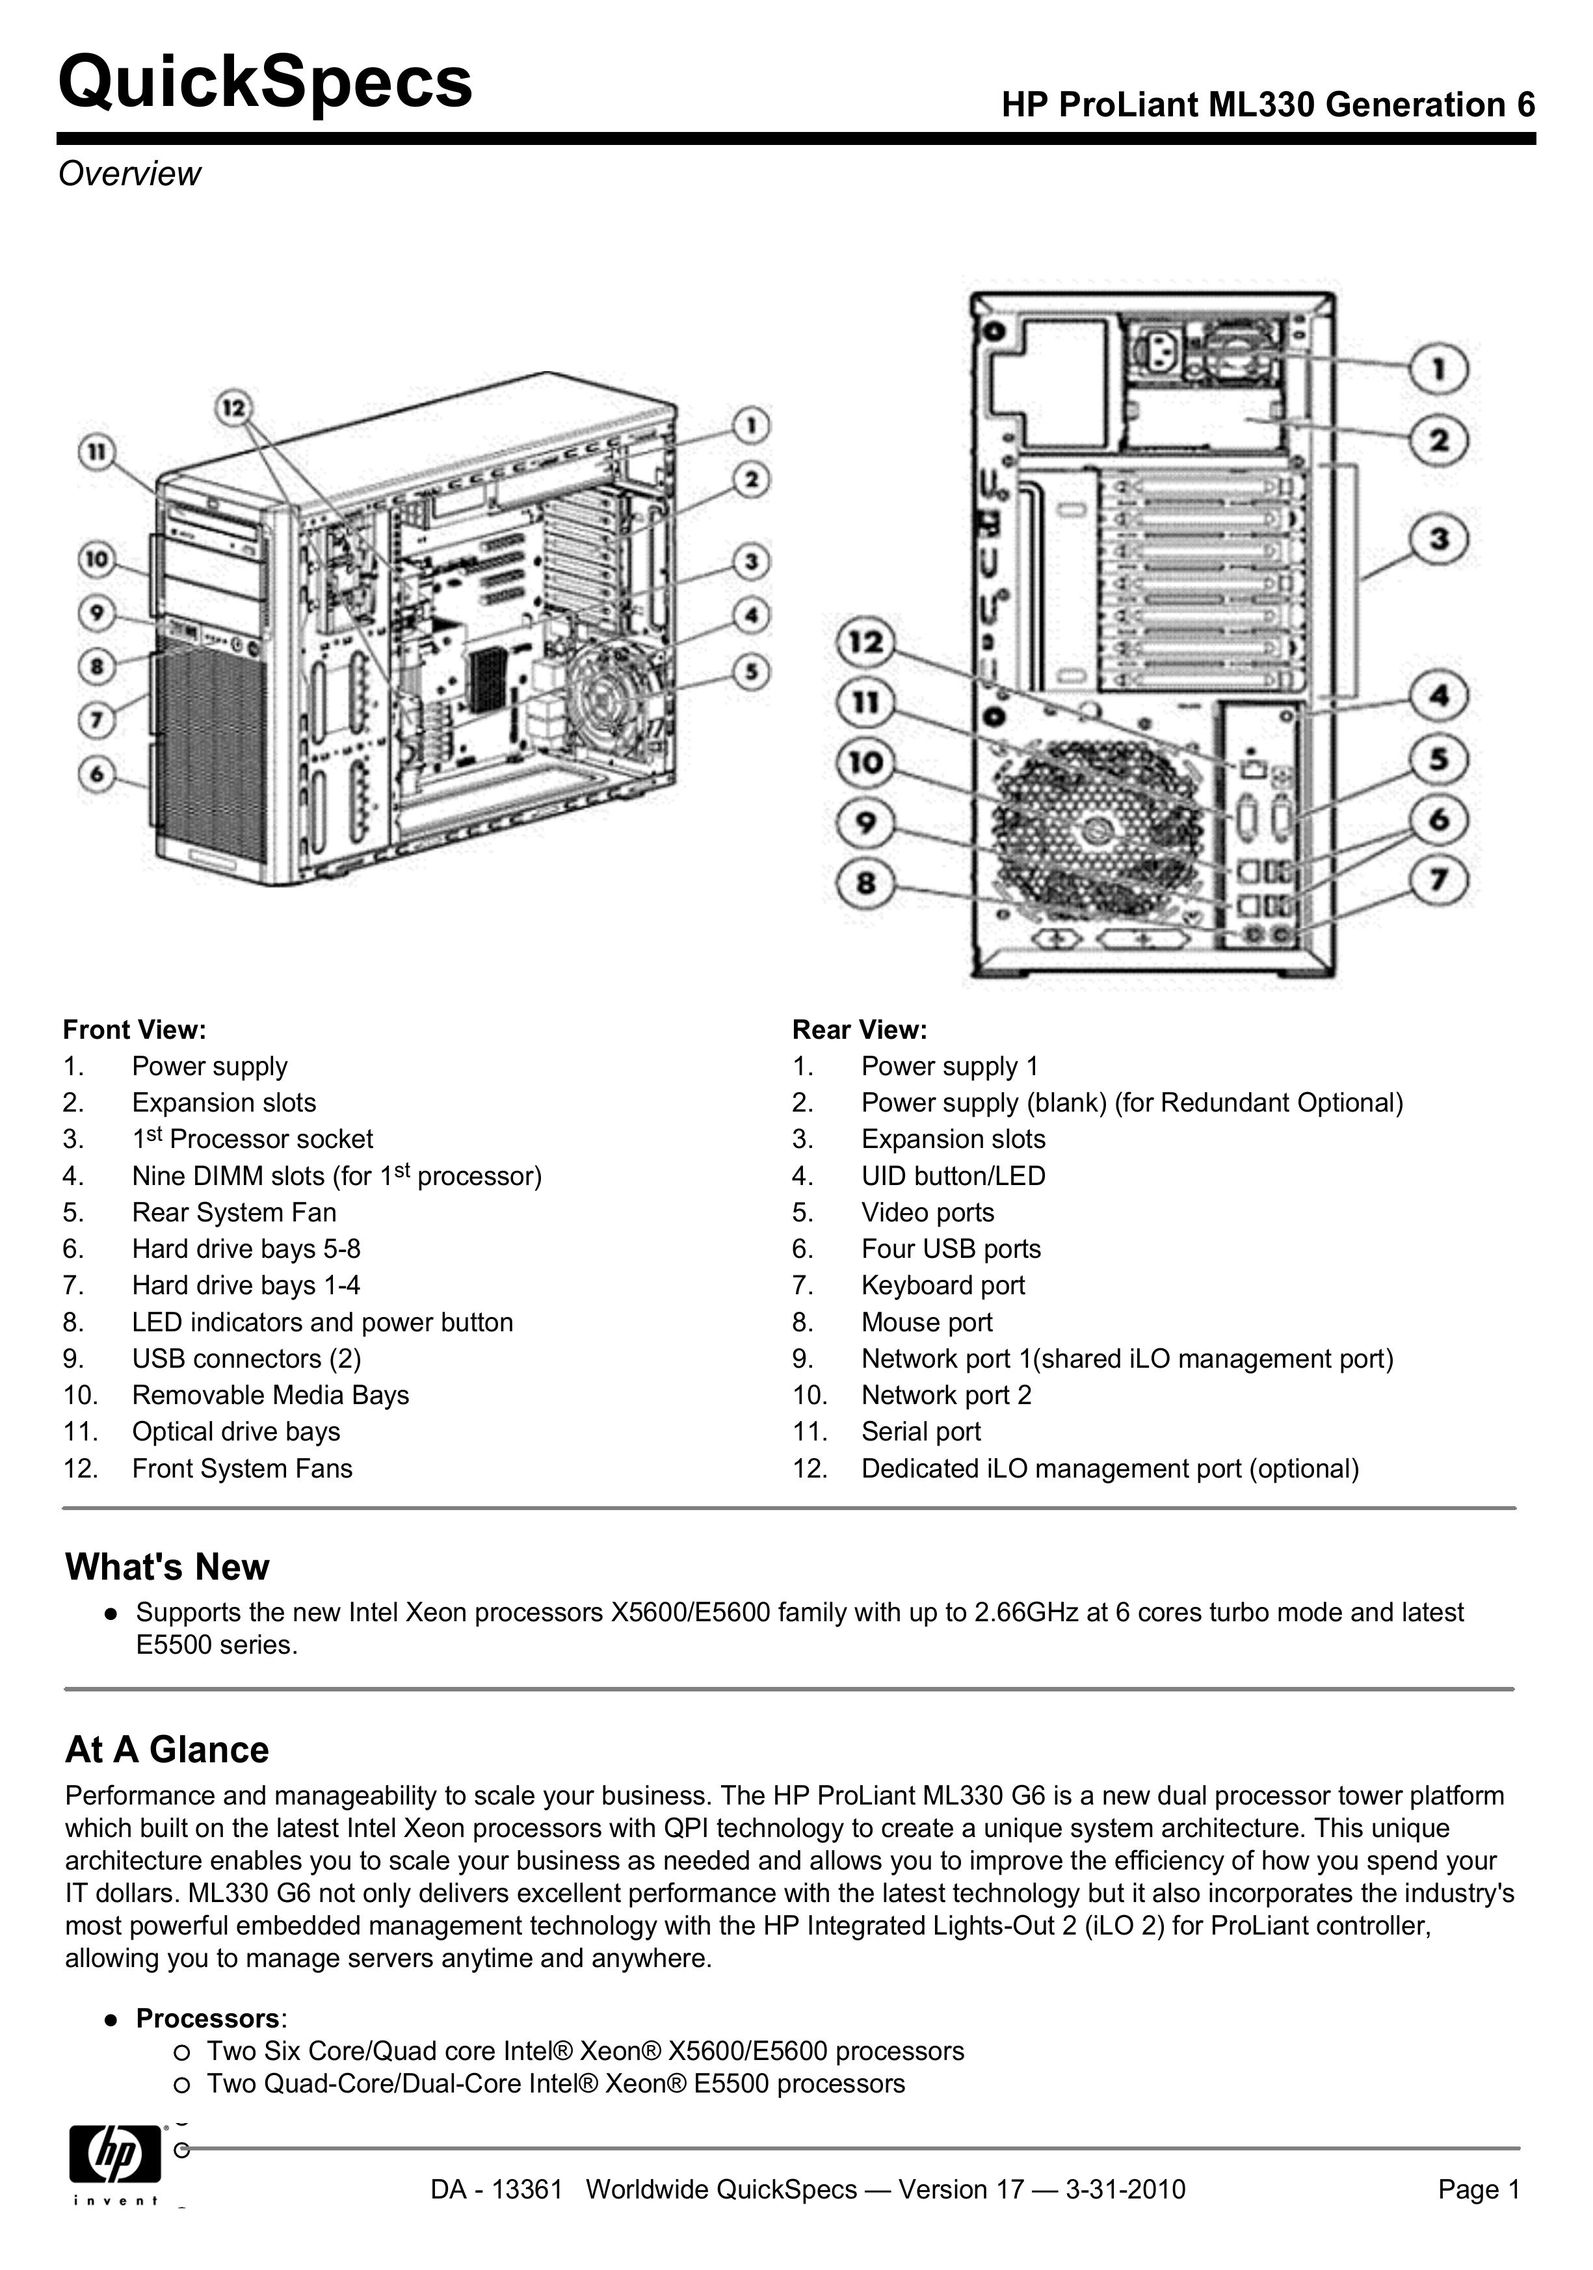 HP (Hewlett-Packard) ML330 Computer Hardware User Manual